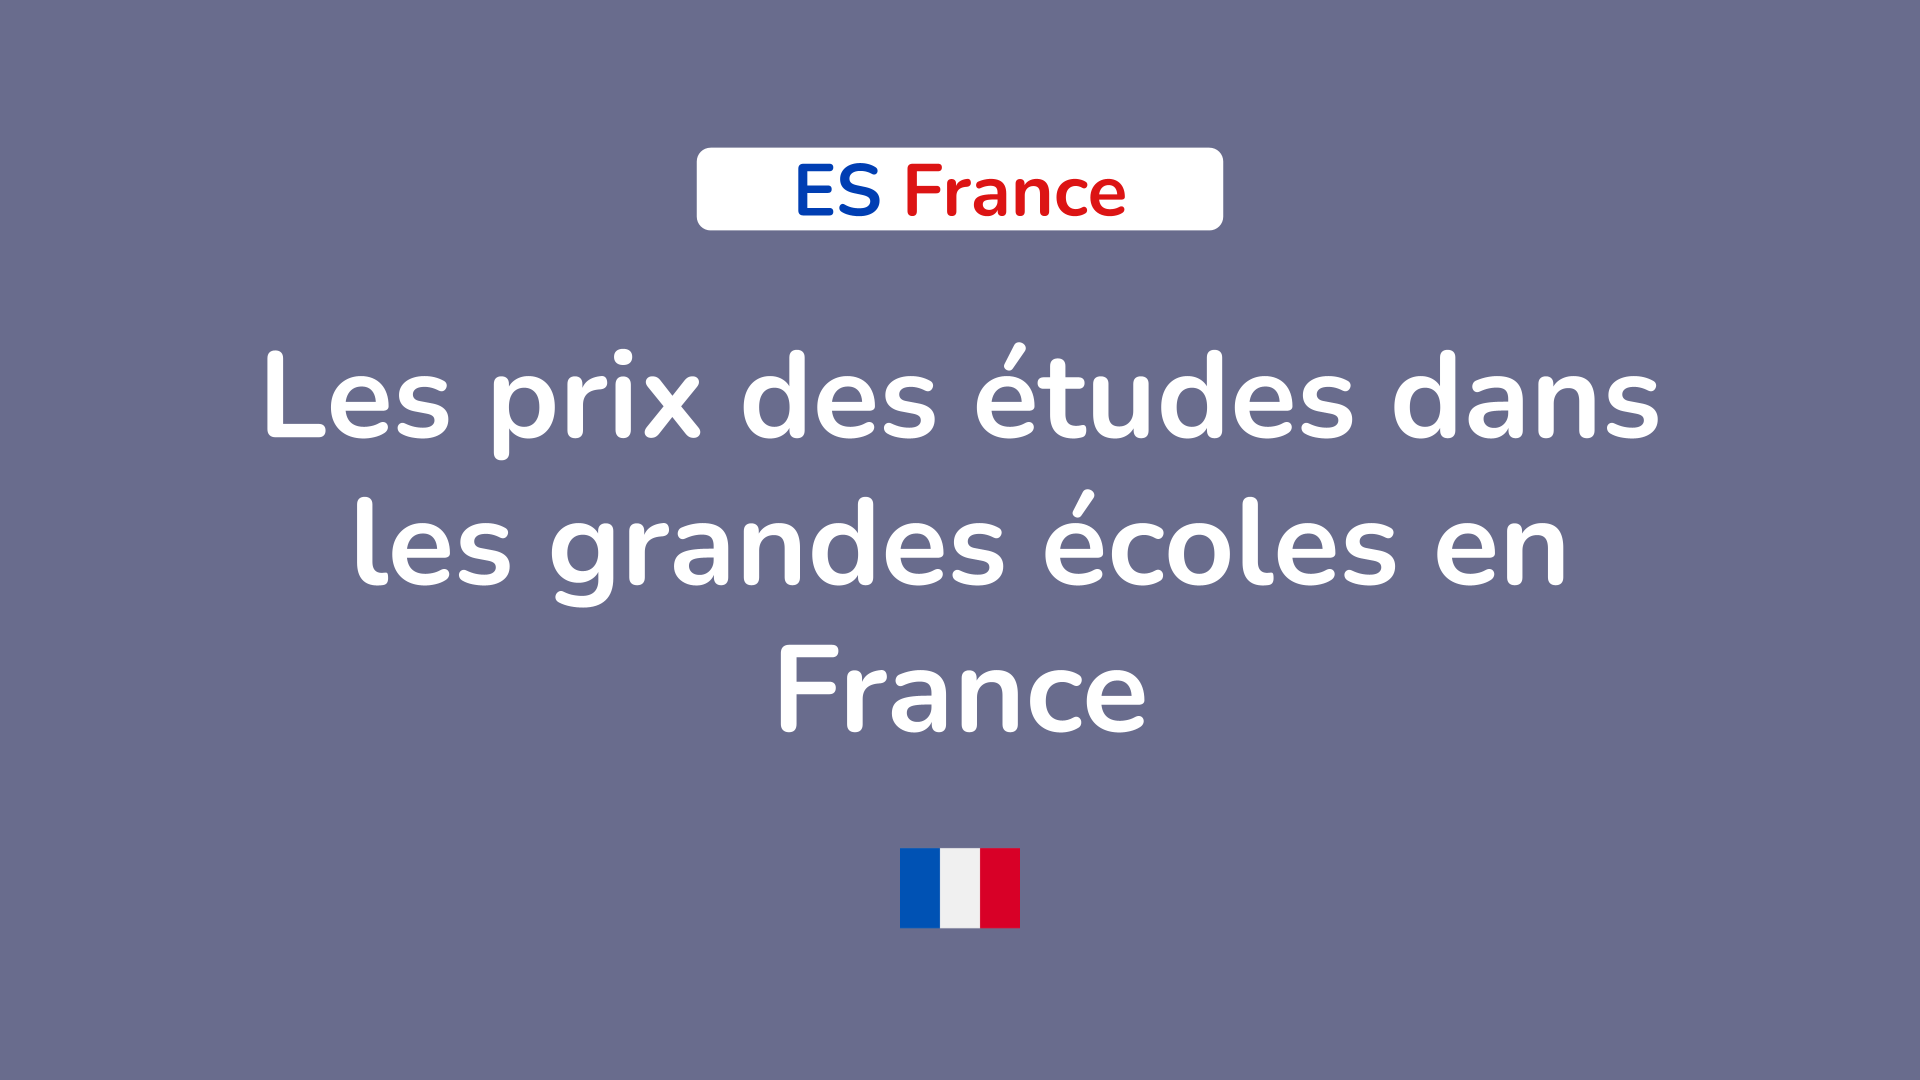 Les prix des études dans les grandes écoles en France